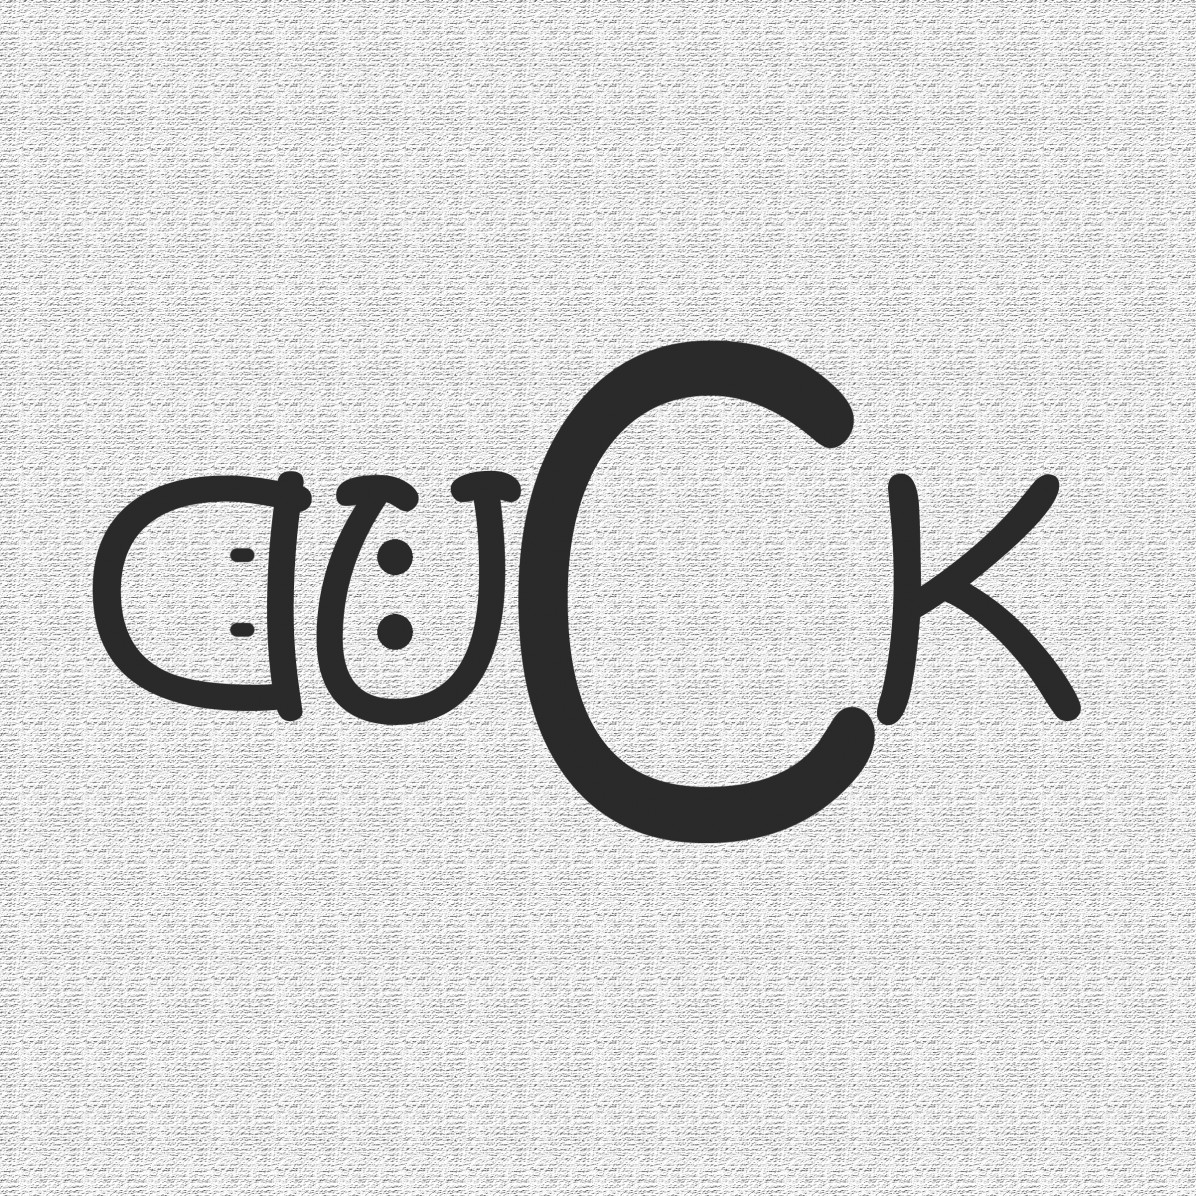 Логотип текстовый DUCK (утка)